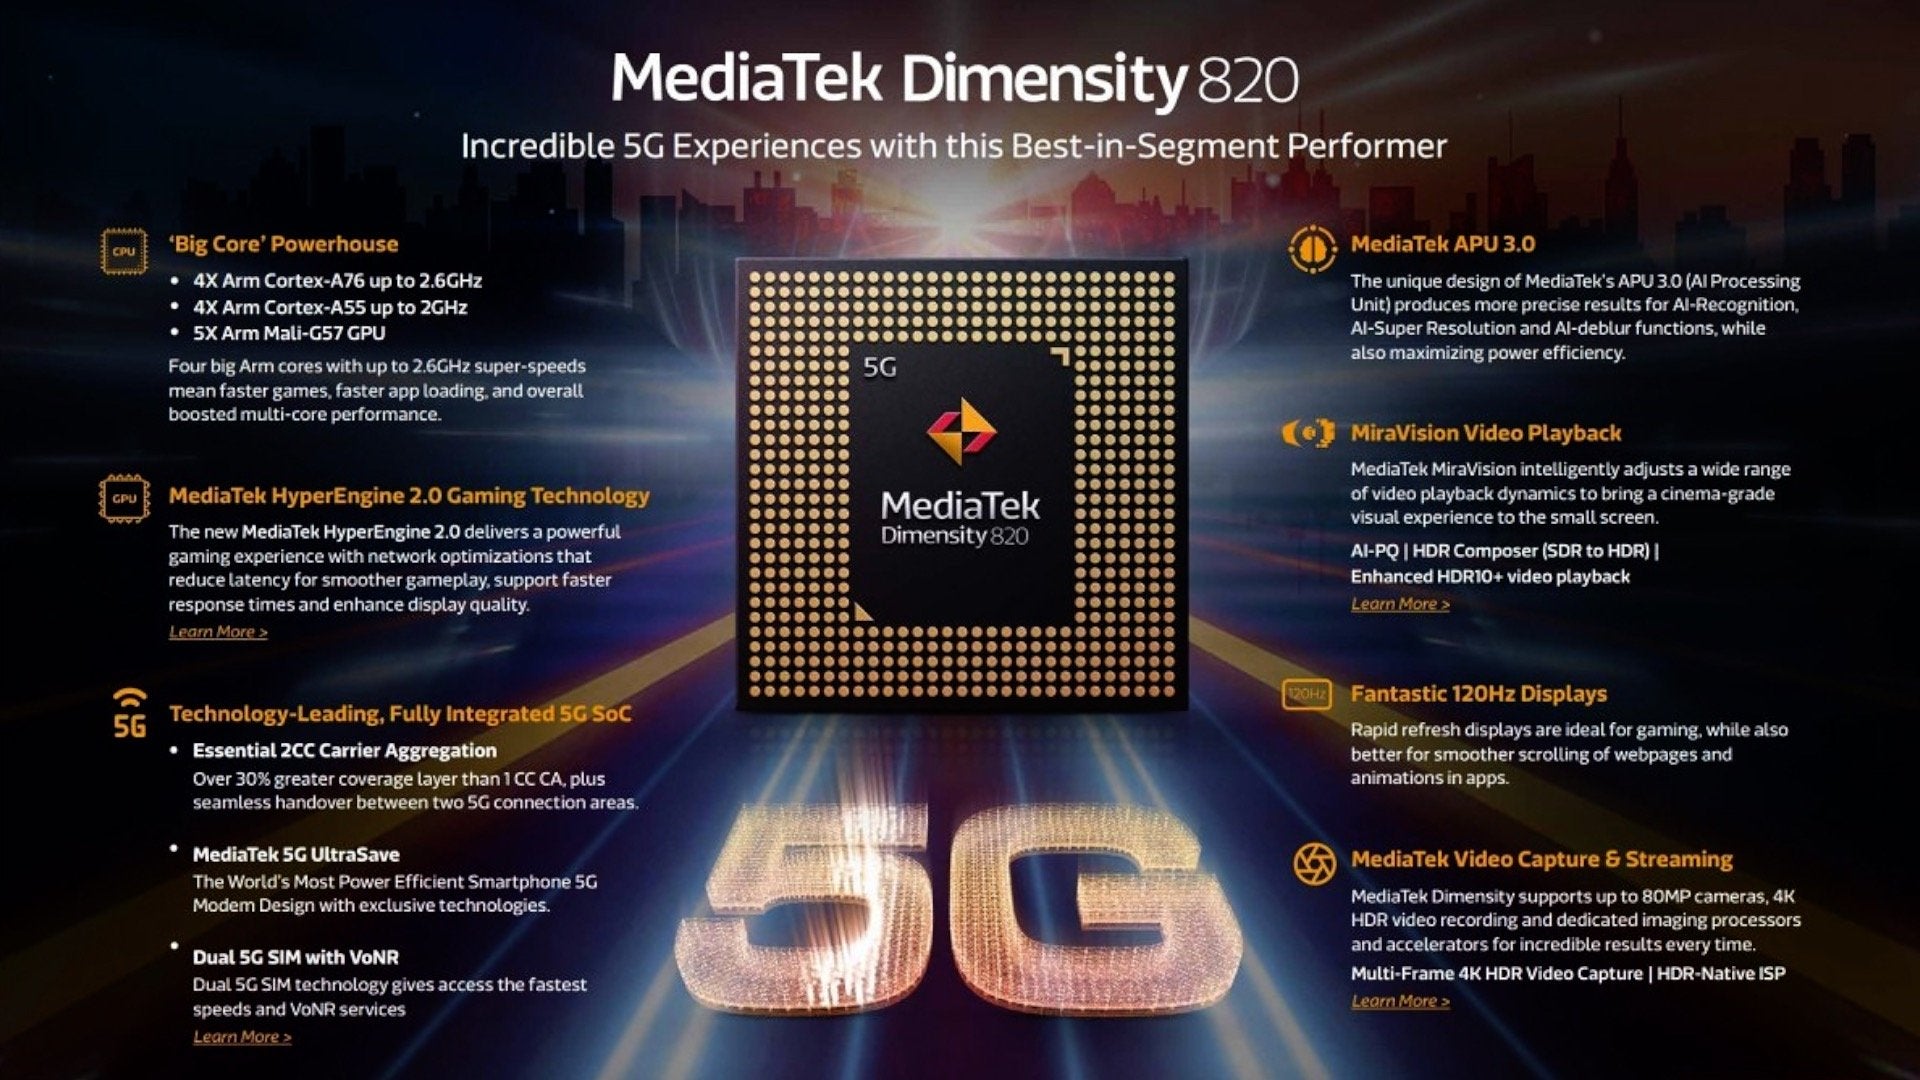 Vi xử lý mới của MediaTek sẽ giúp đưa các smartphone hai SIM 5G xuống phân khúc tầm trung